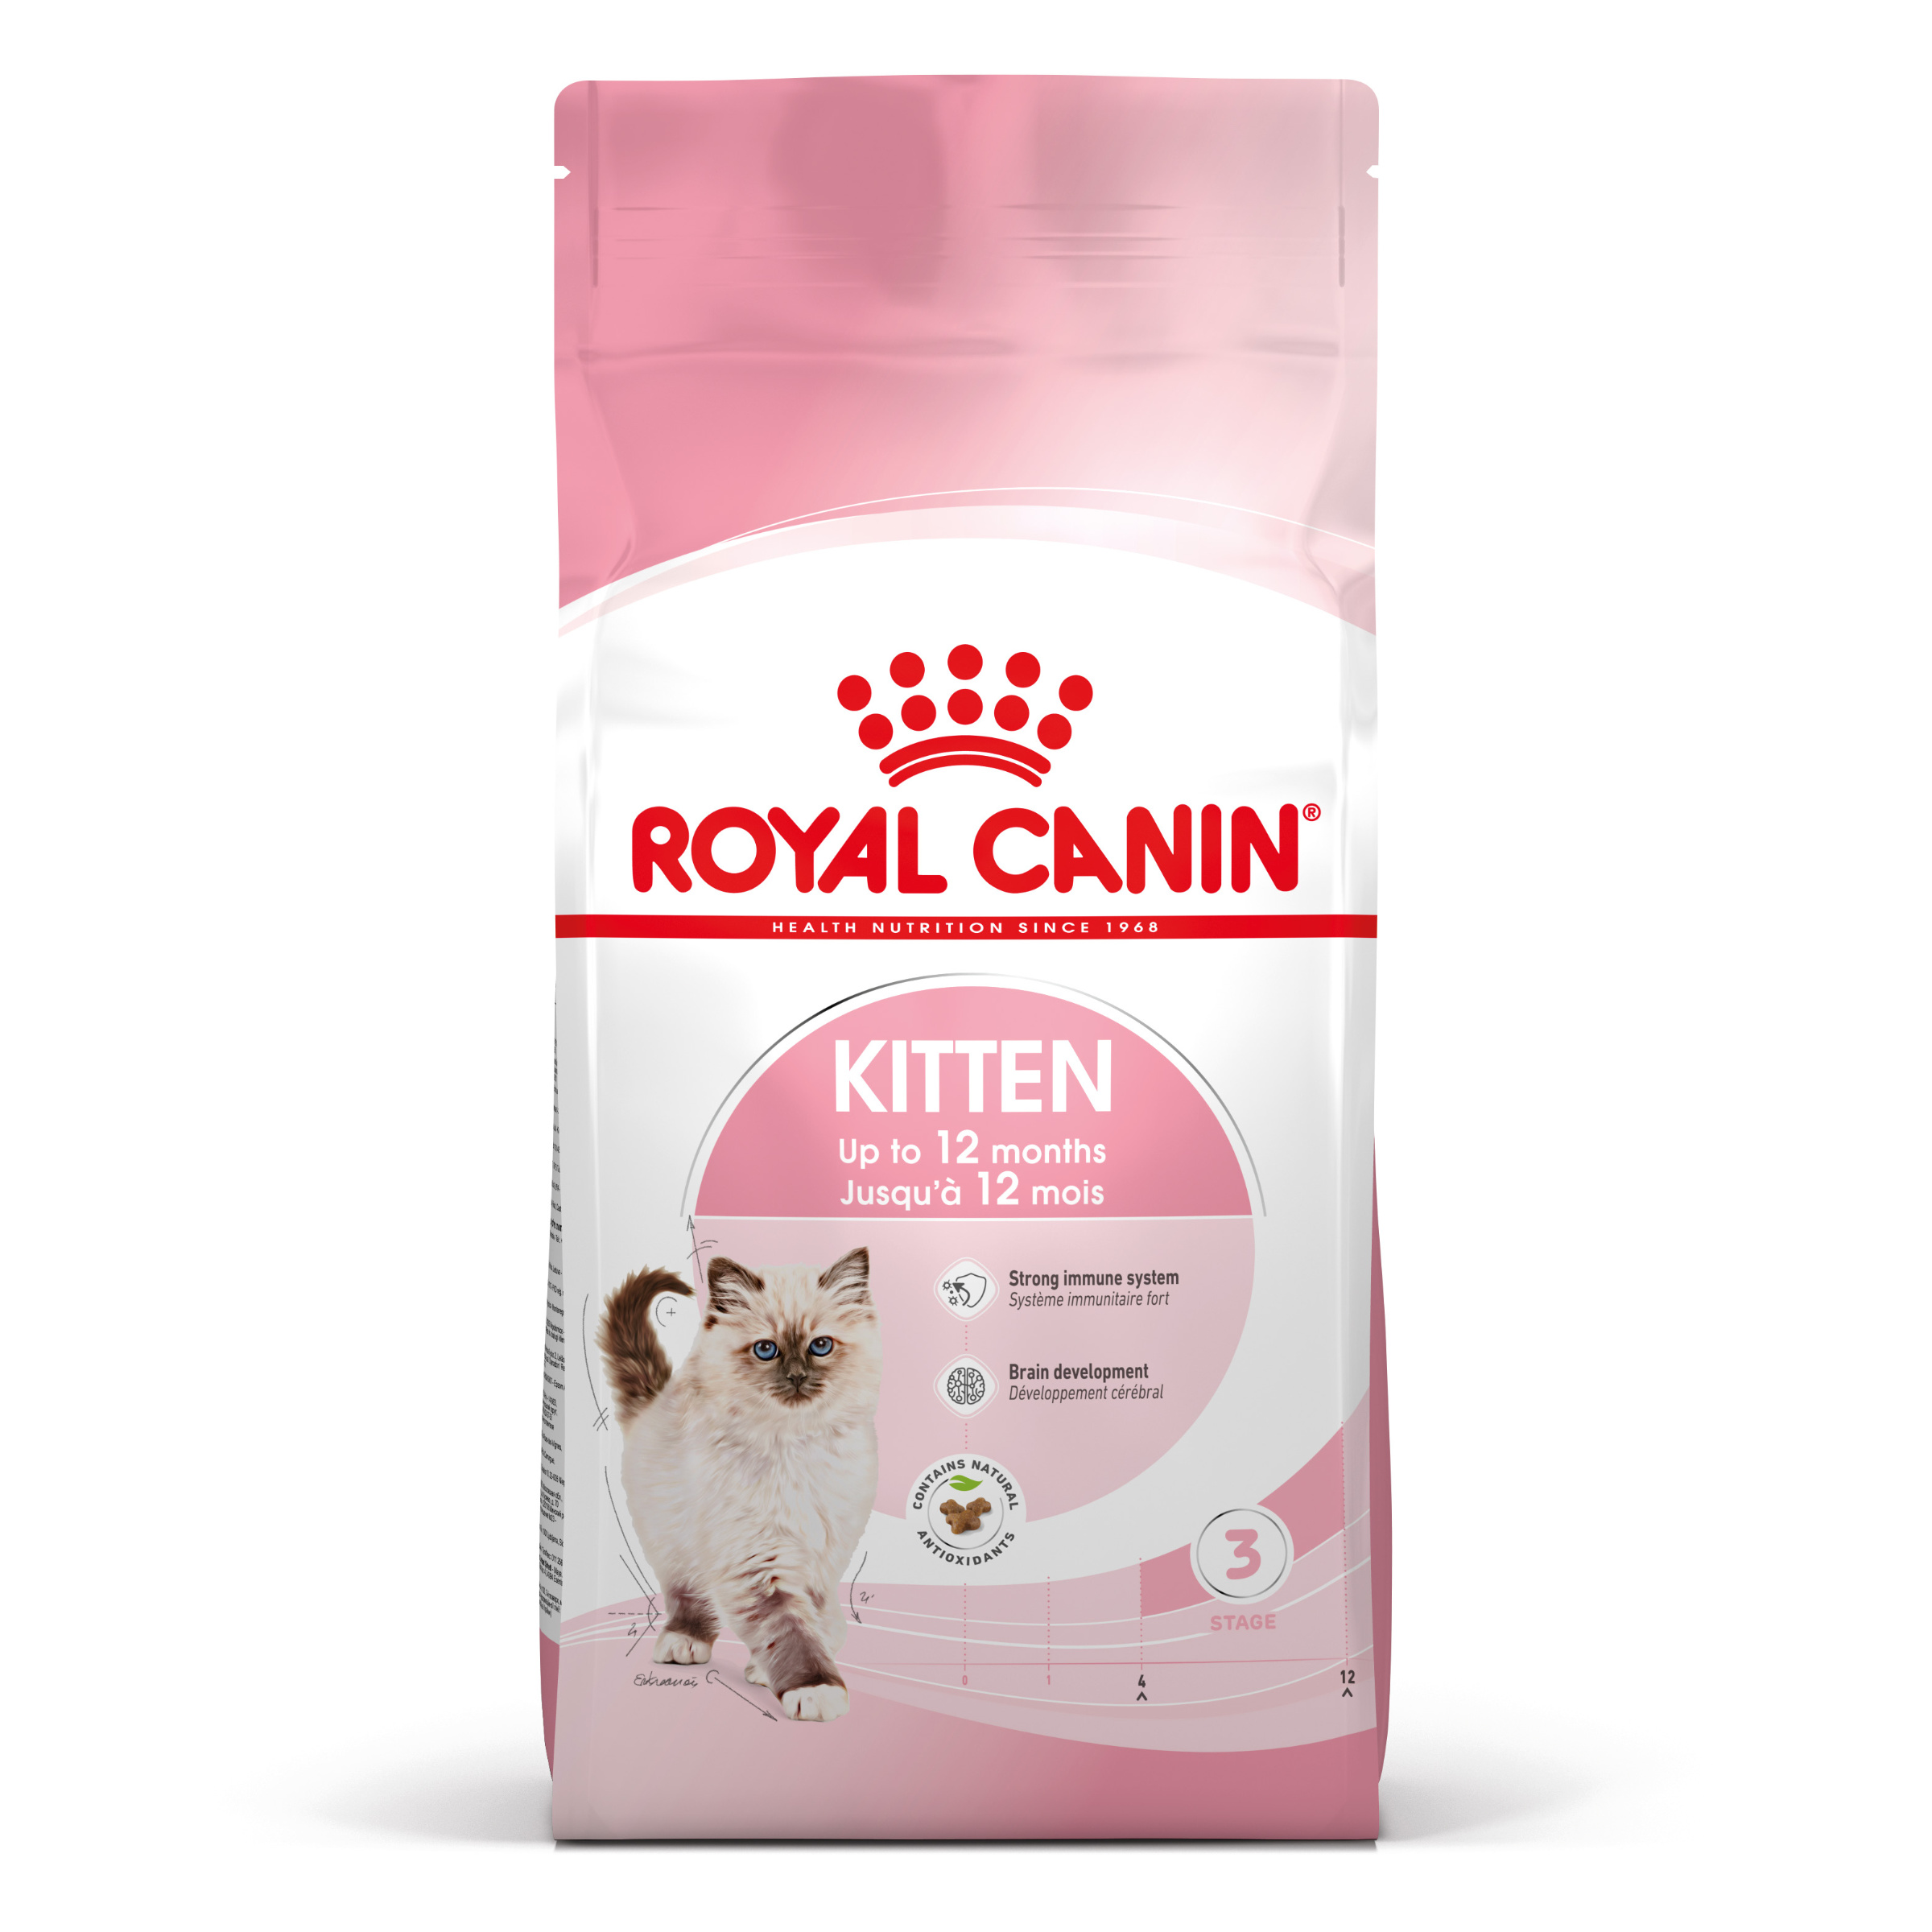 Royal Canin Kitten - Kattenvoer voor kittens in de tweede groeifase (tot 12 maanden) - 4kg